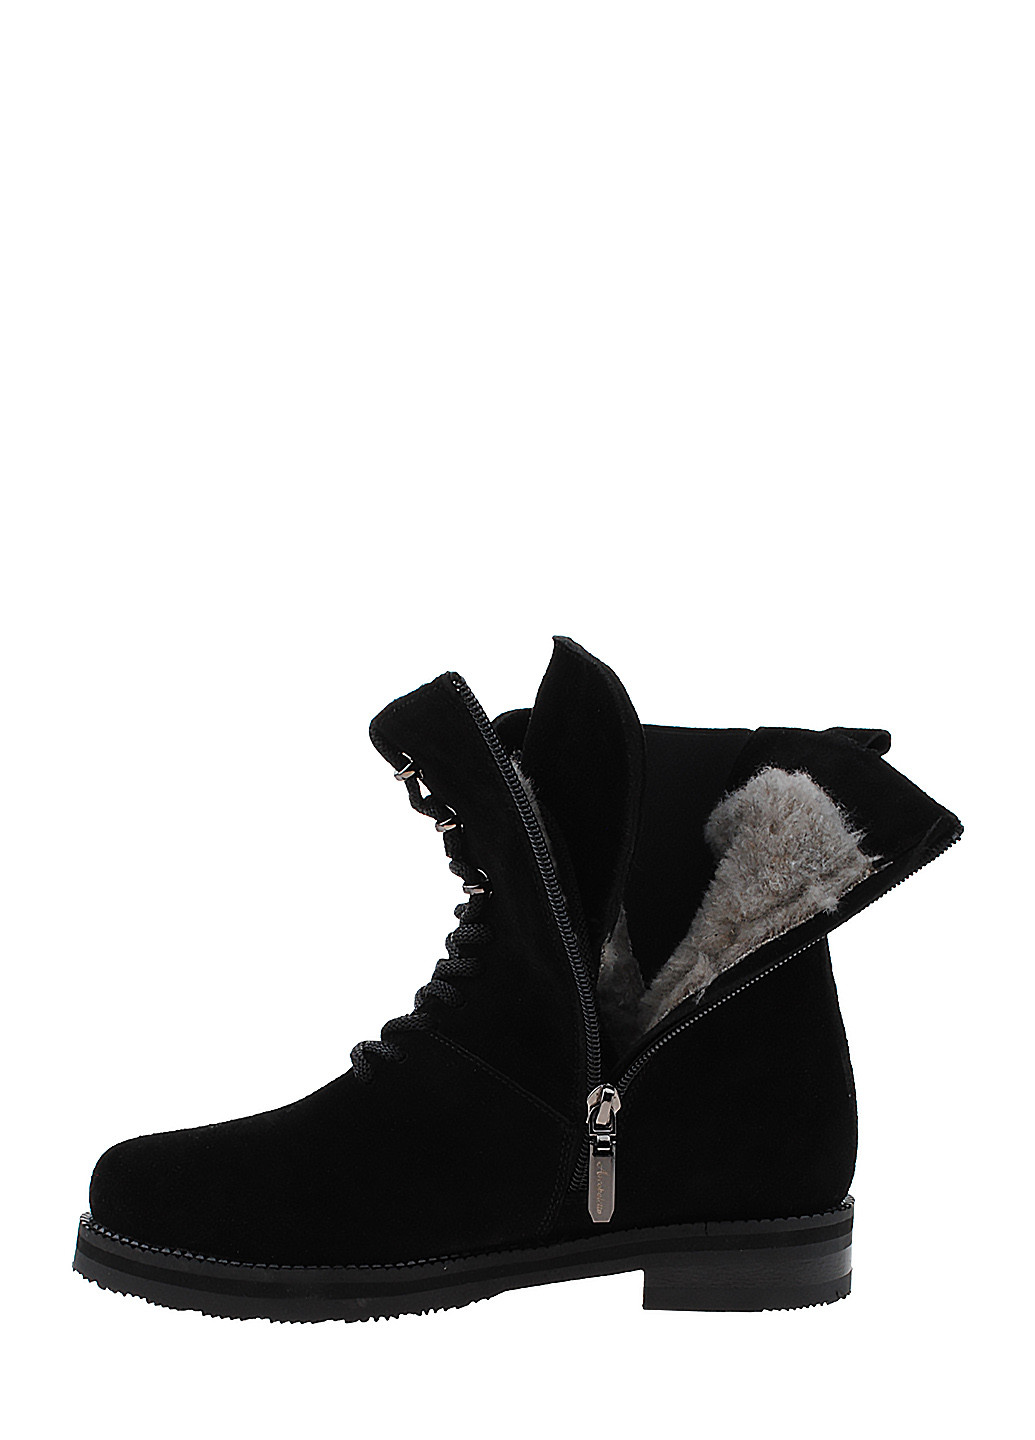 Зимние ботинки r321-456-11 черный Arcoboletto из натуральной замши